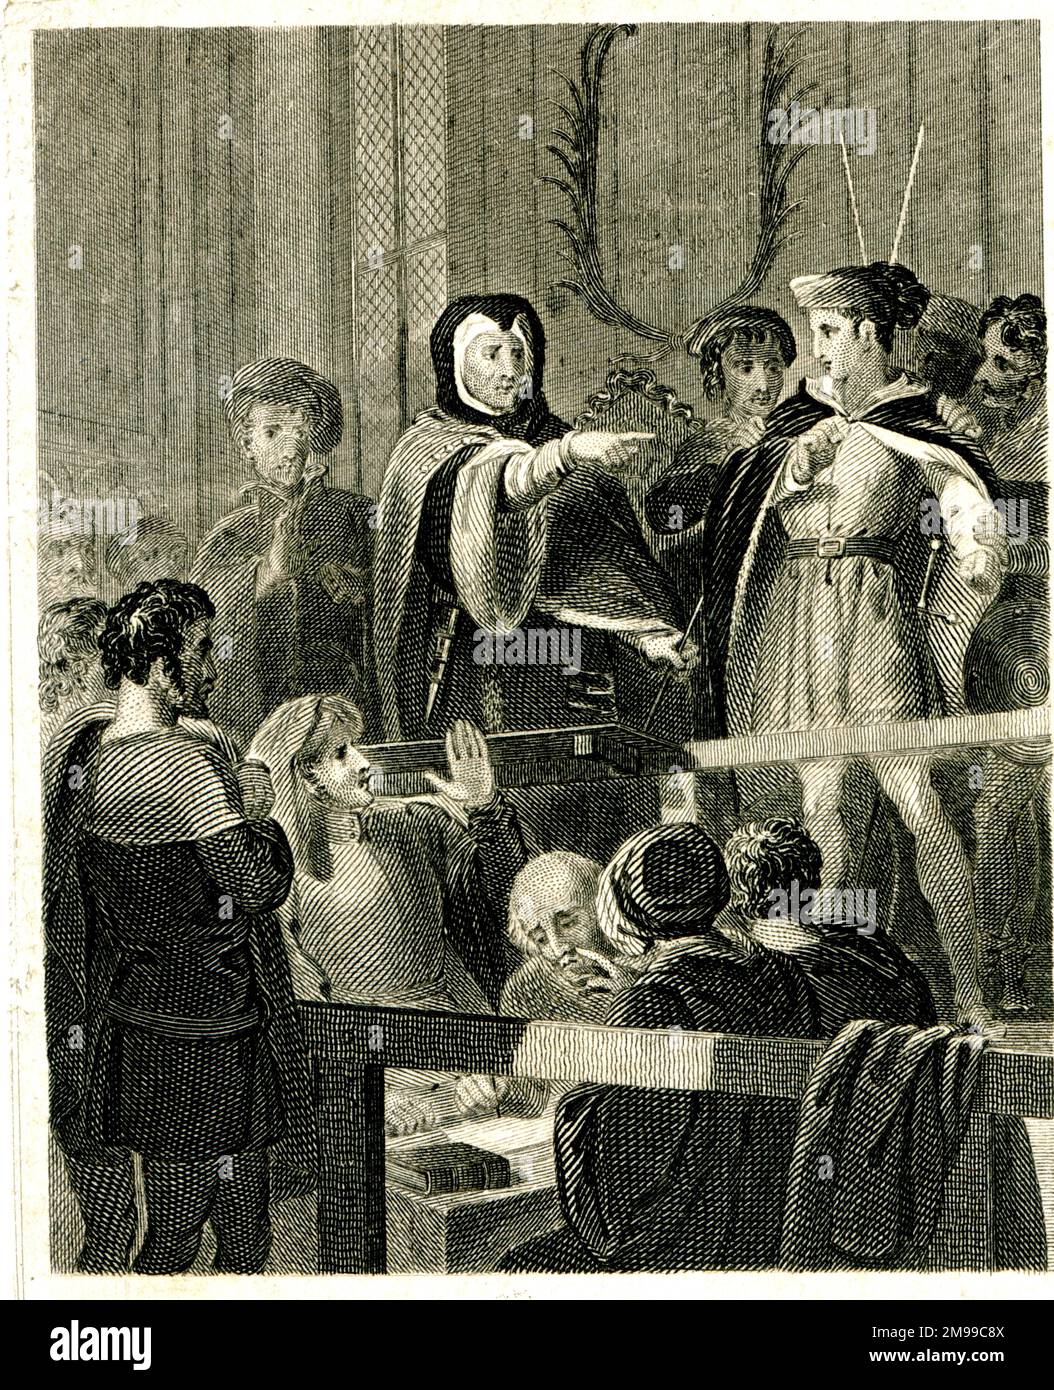 Enrico, Principe di Galles (il futuro Re Enrico V) si è impegnato in prigione per aver colpito il giudice William Gascoigne nella Corte della Panchina del Re - una storia apocrifa. Foto Stock